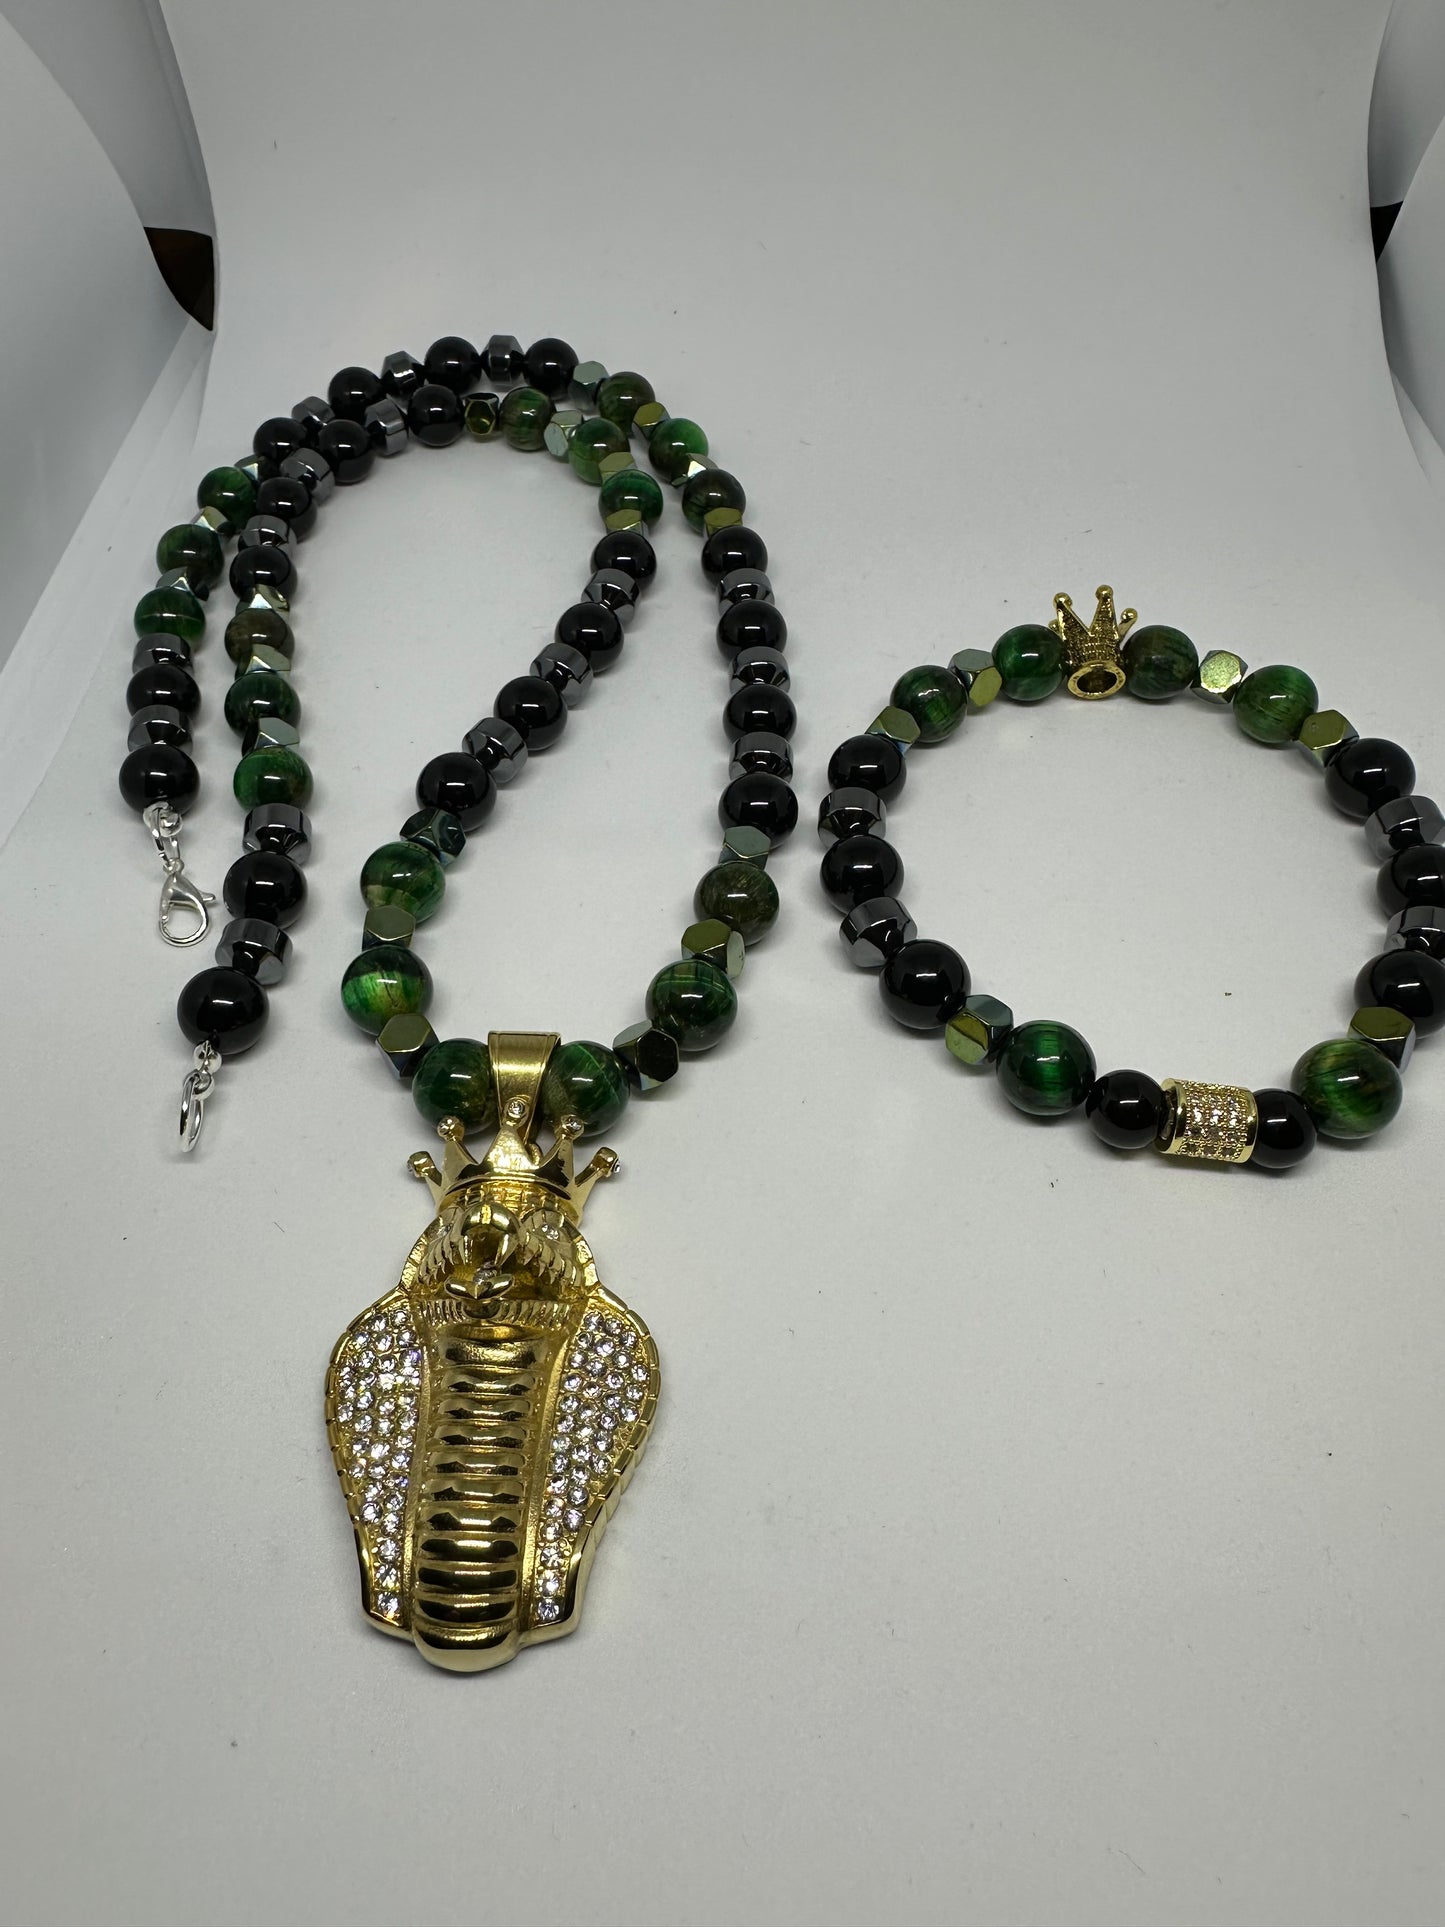 Bling necklace and bracelet set